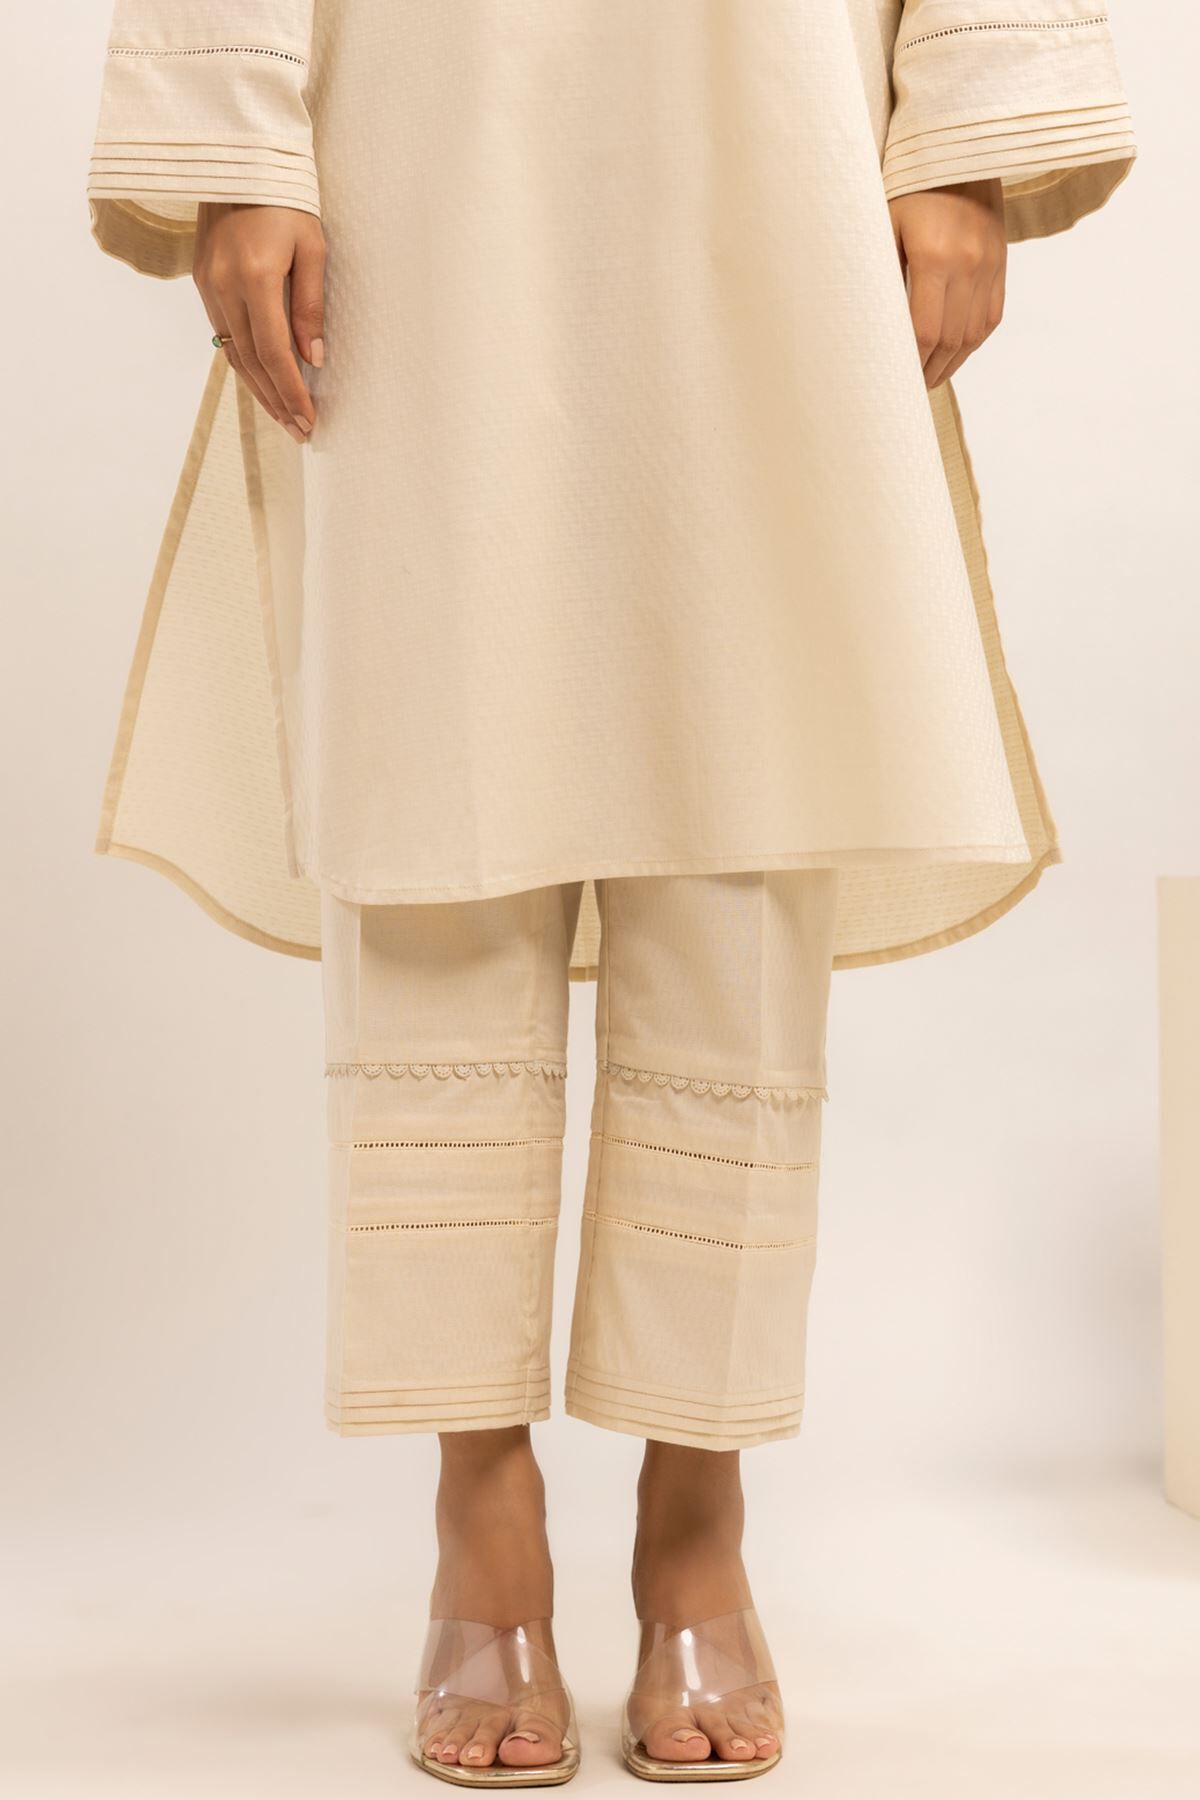 Khadi Cotton Pants for Women  Khadi Pants  Naariy